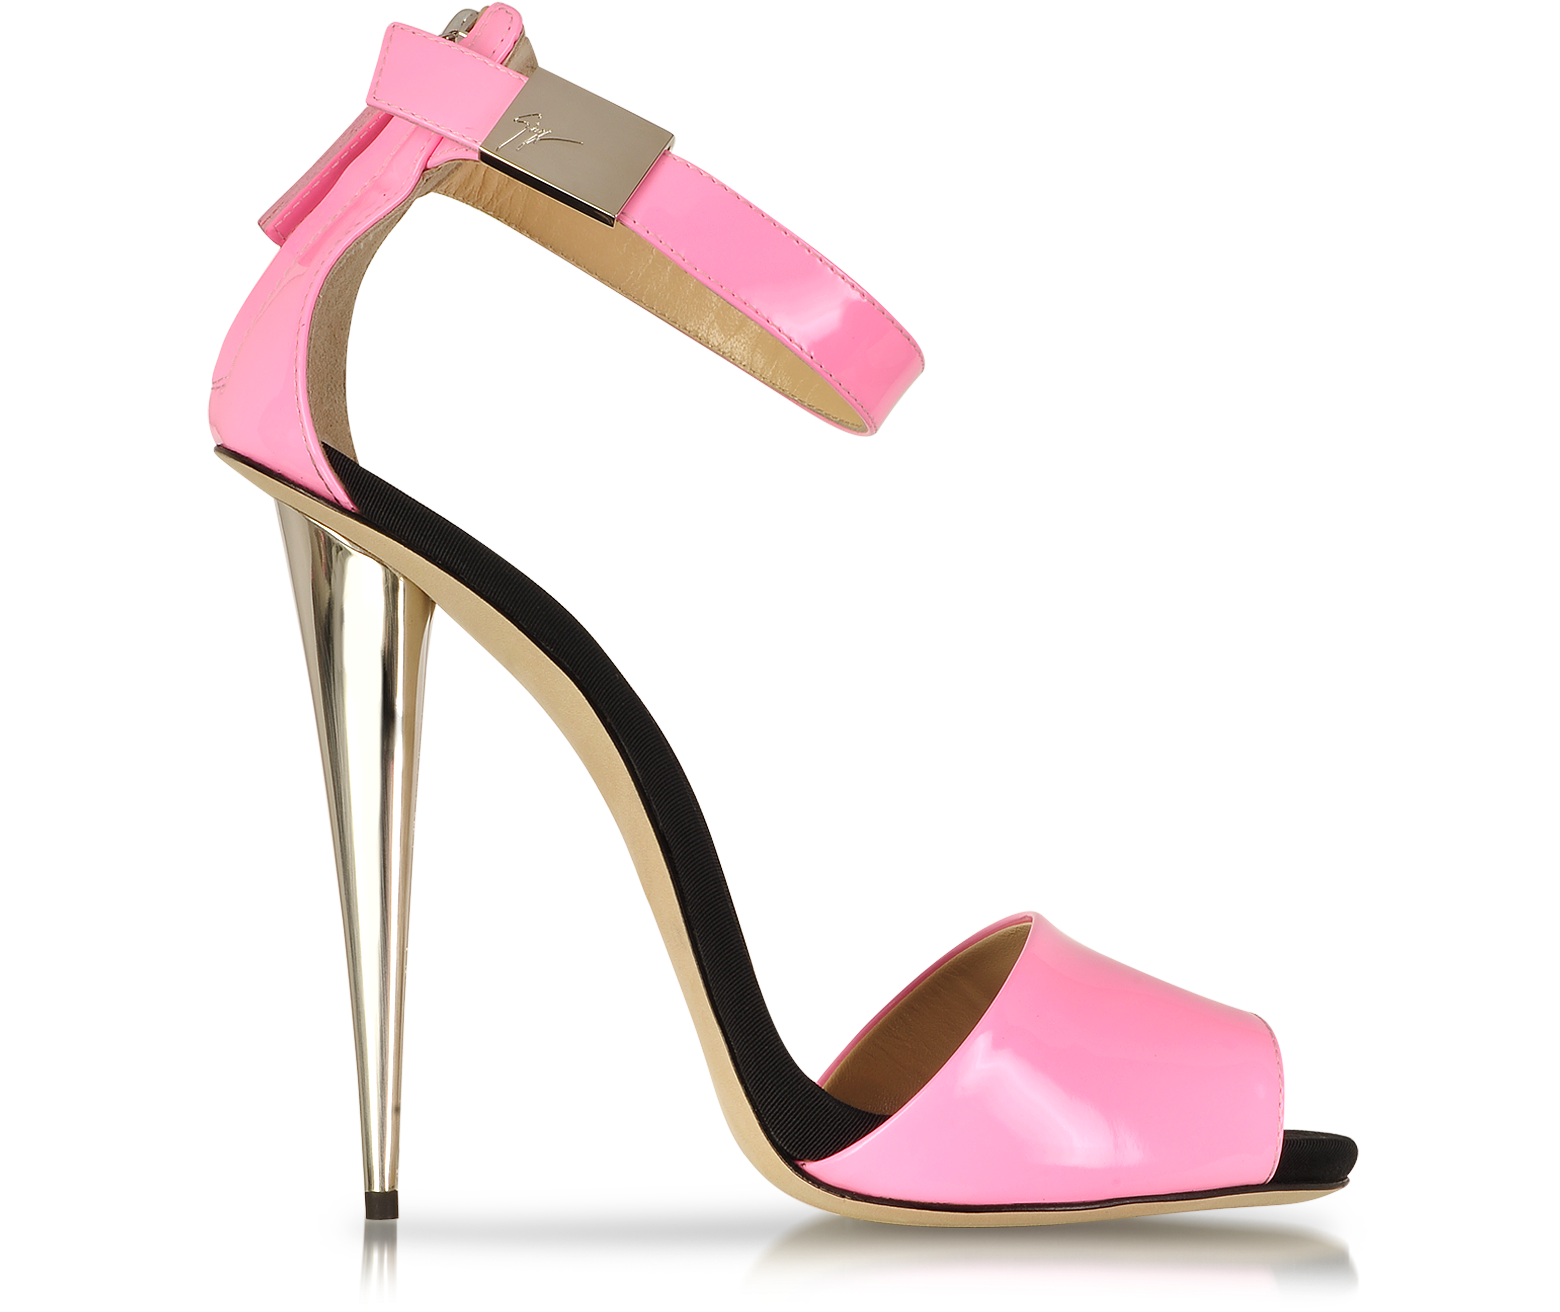 Giuseppe Zanotti Neon Pink Patent Leather Sandal 36 IT/EU at FORZIERI